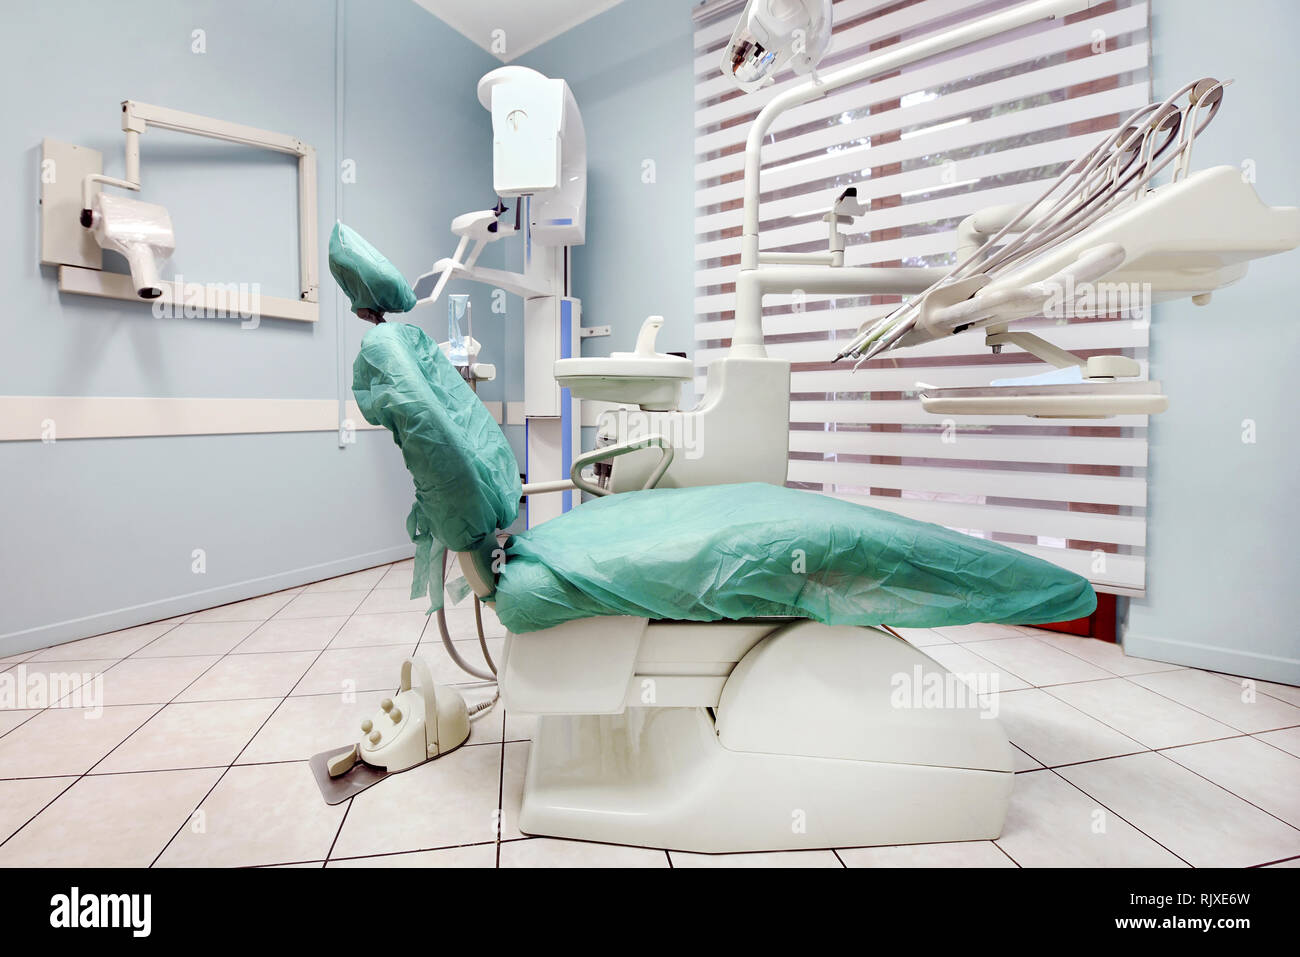 Dentista vacía cirugía con camilla de examen y equipos médicos y de salud en un concepto Foto de stock